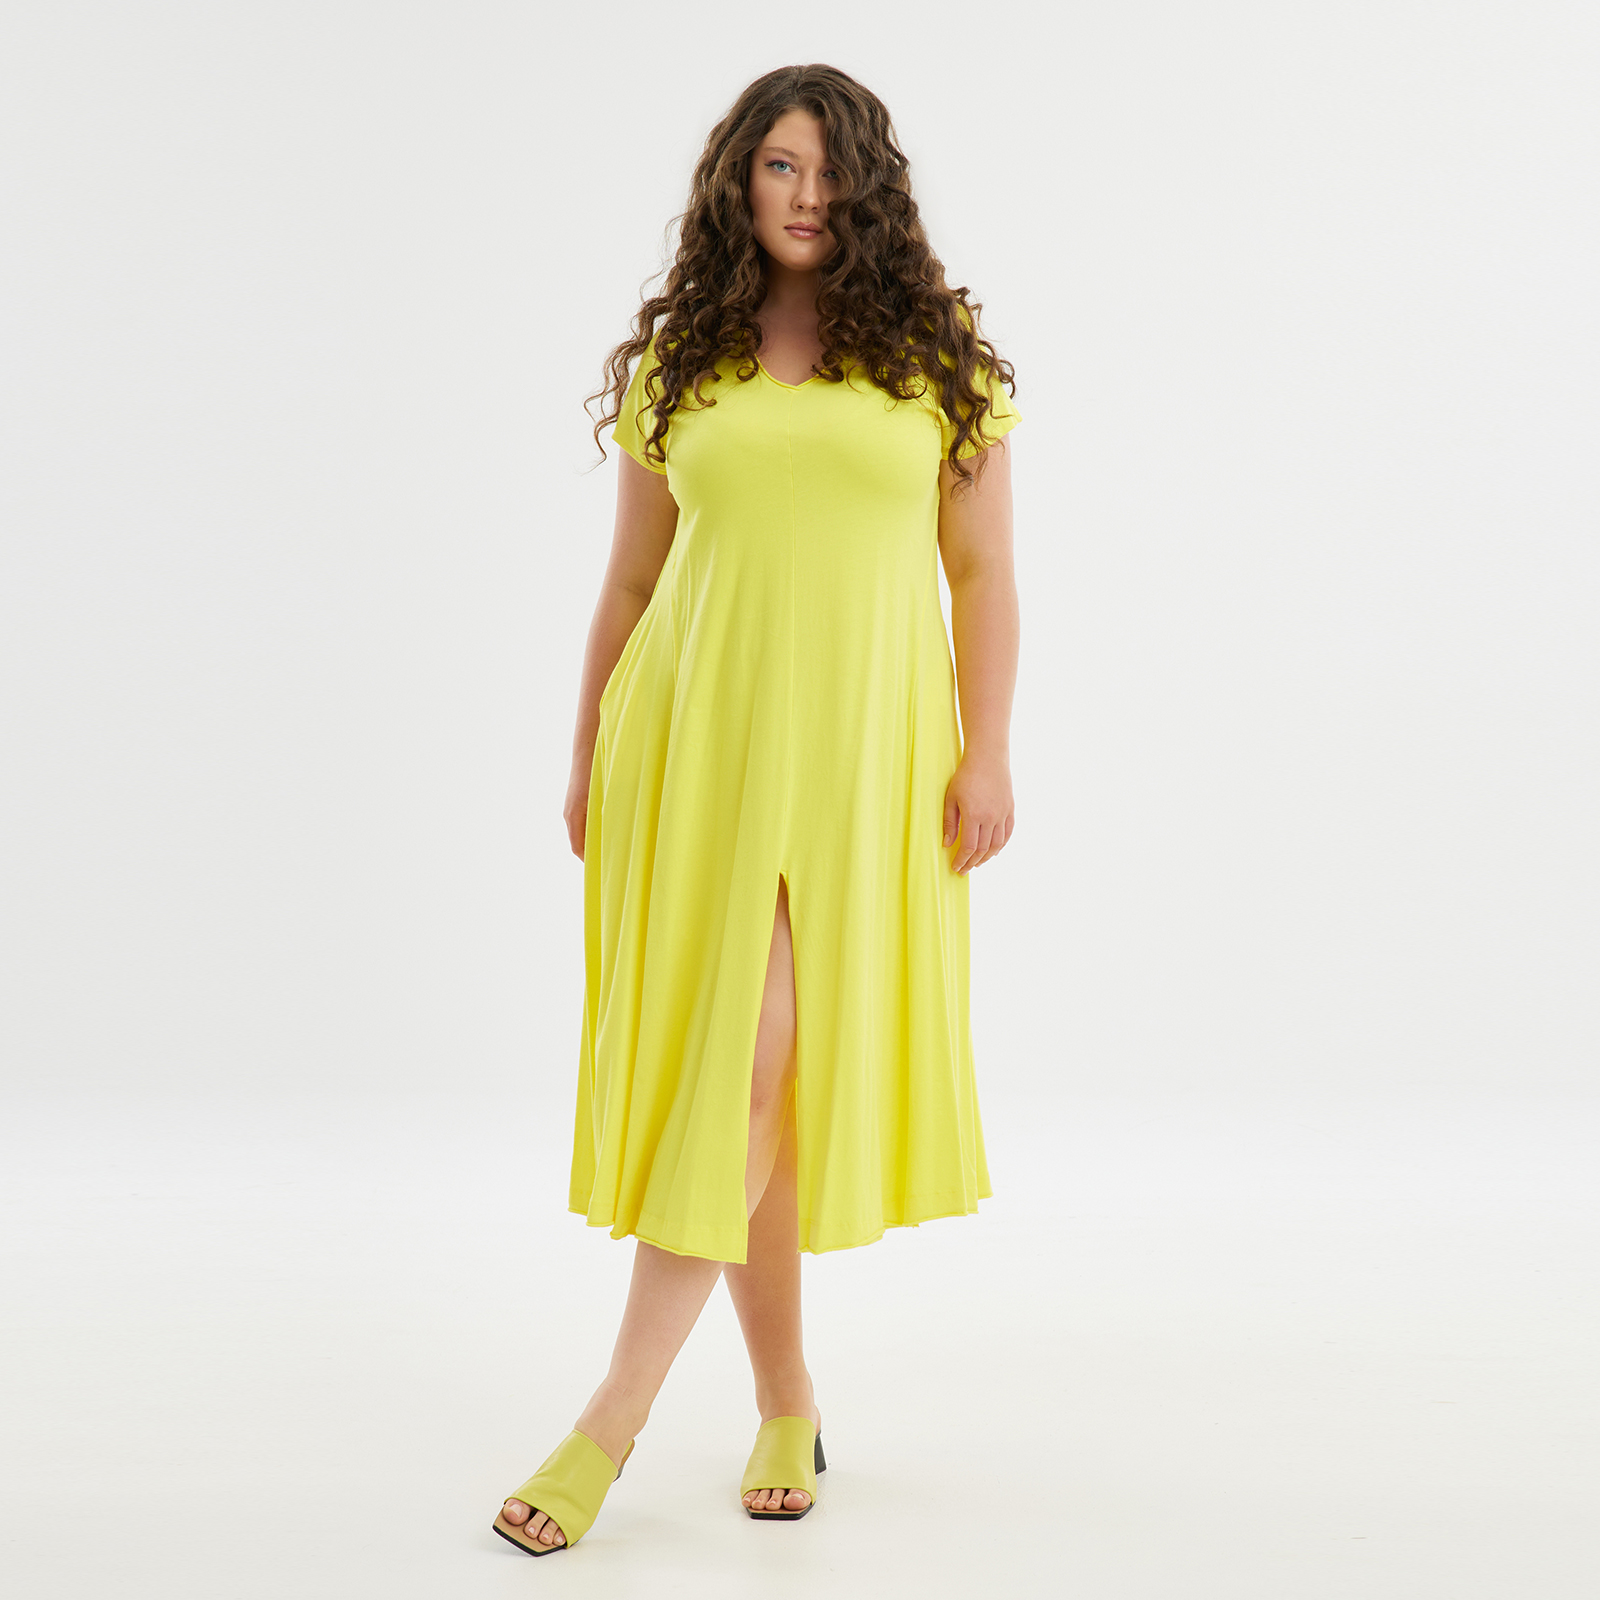 Φόρεμα βαμβακερό με άνοιγμα μπροστά 8101.7115-yellow